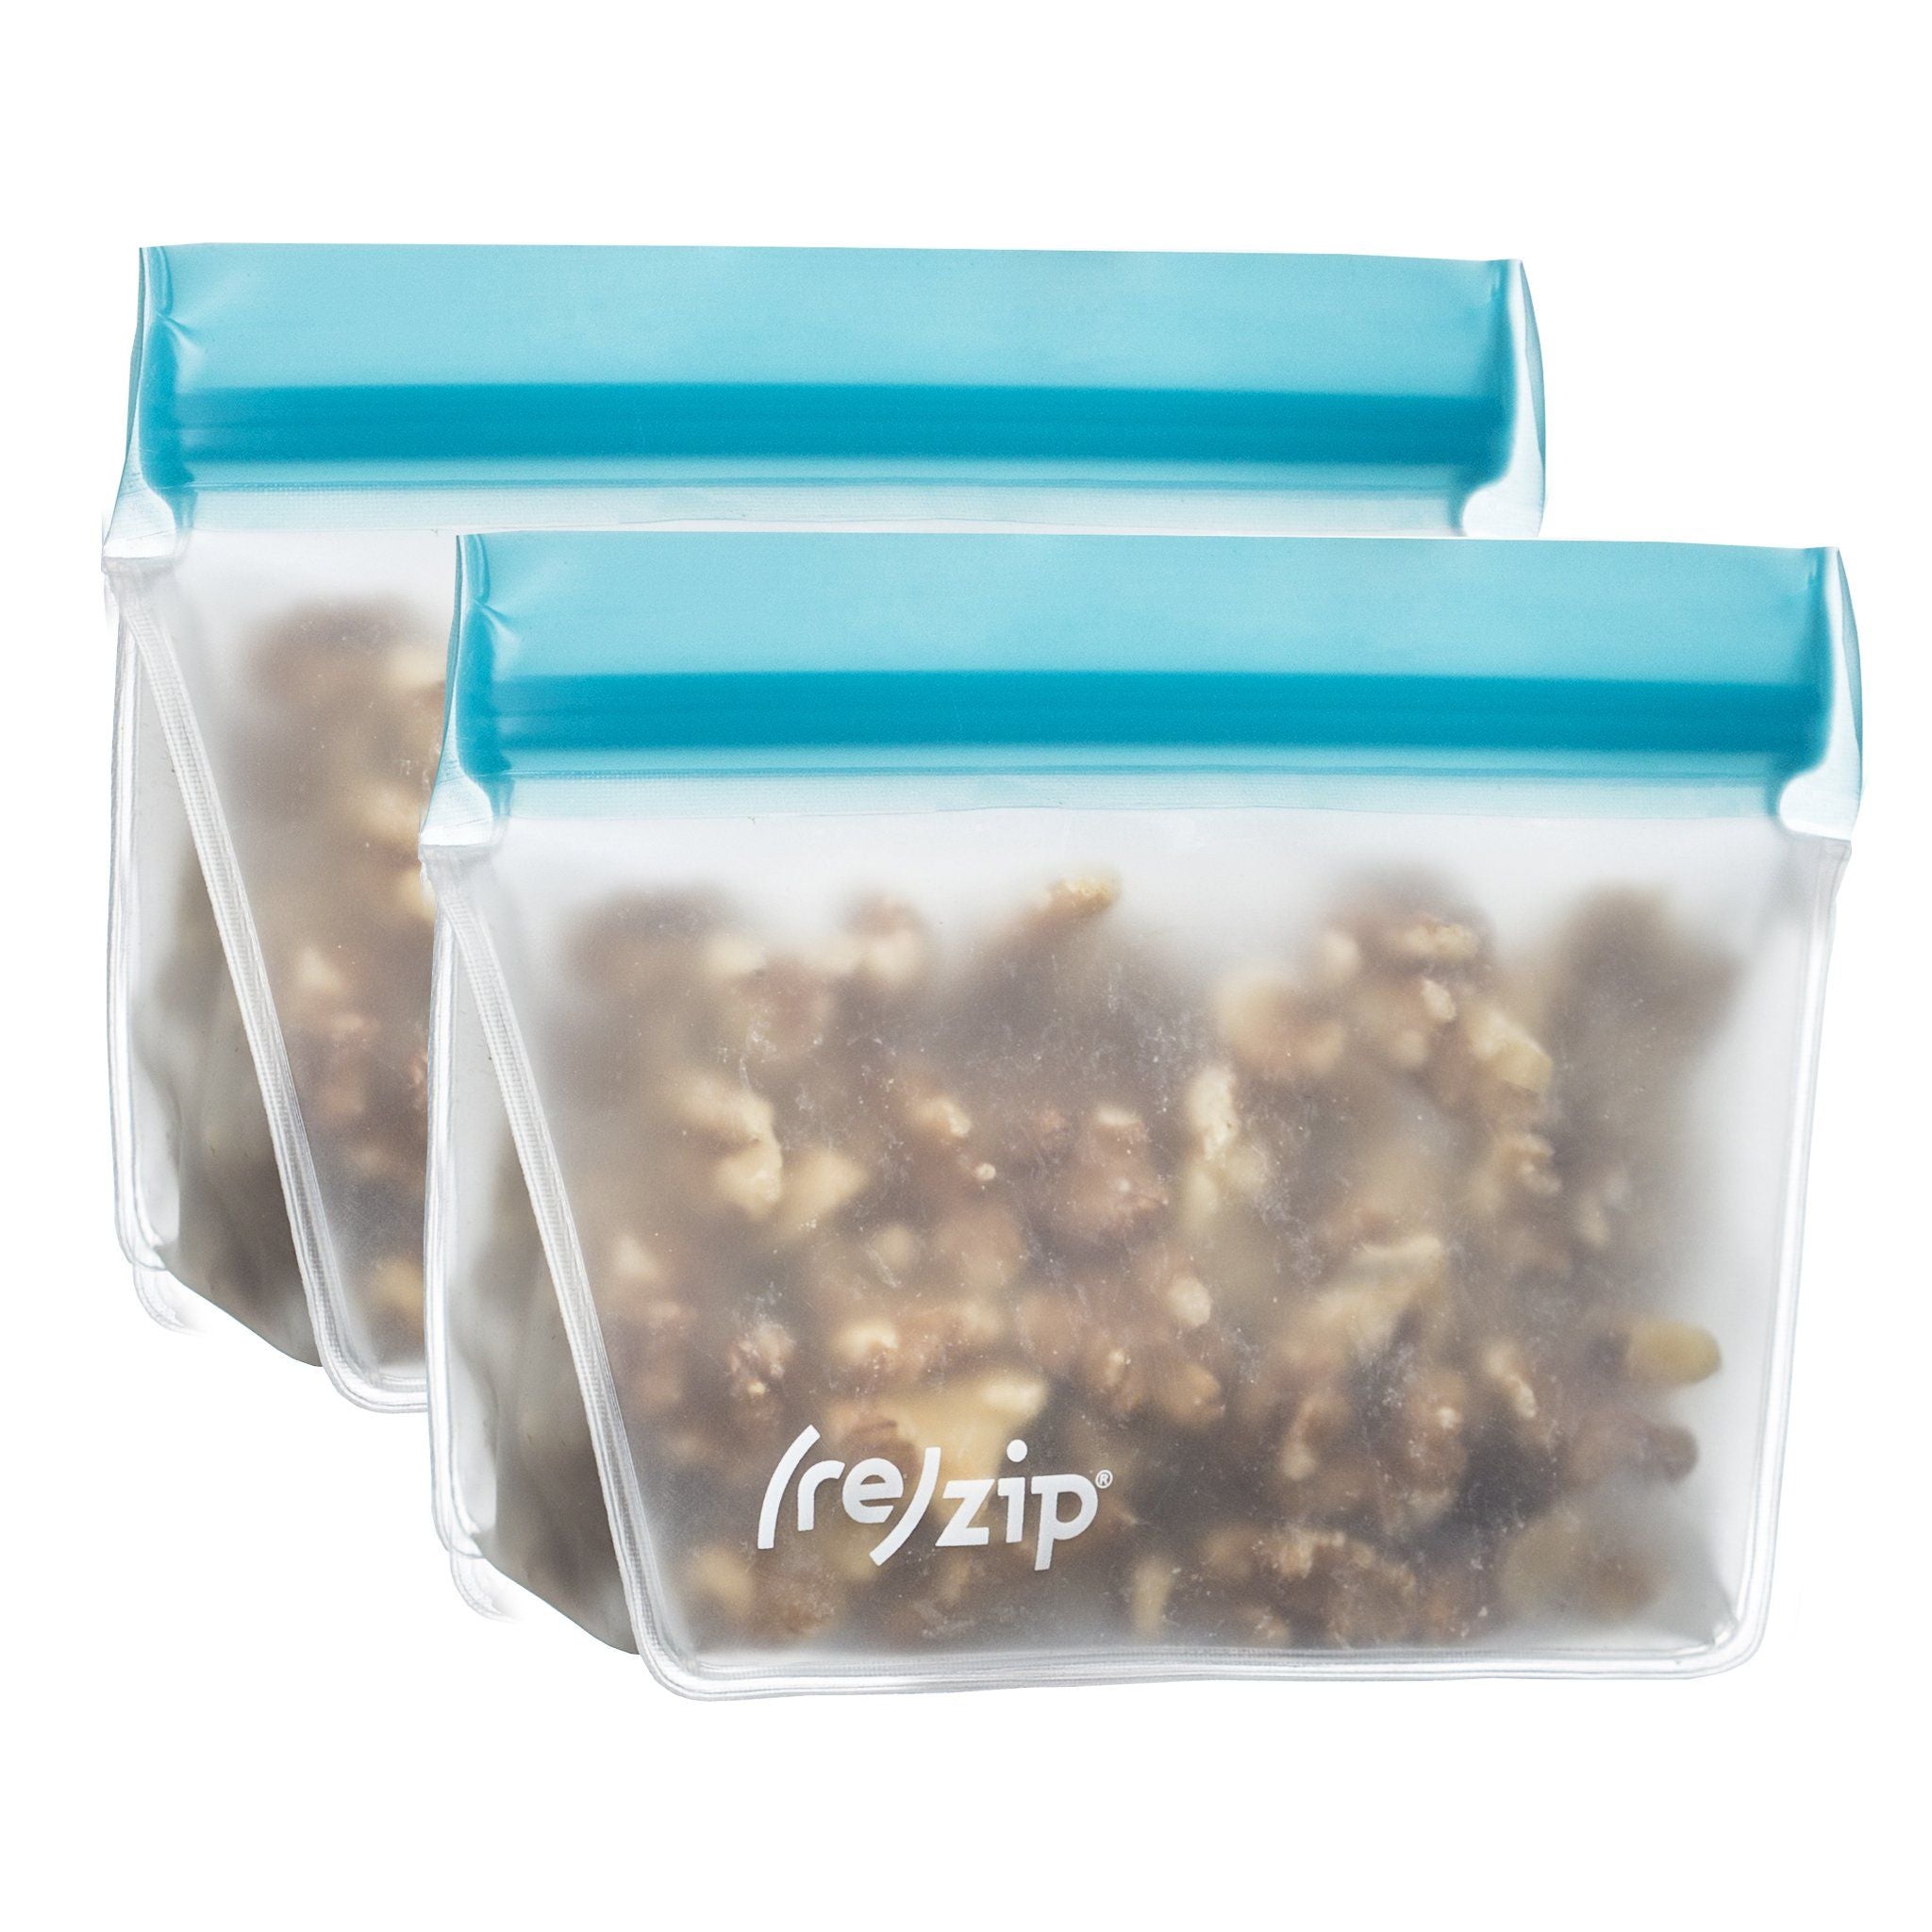 re)zip Deluxe 8-piece Resusable Storage Bag Kit (Moss Green / Aqua